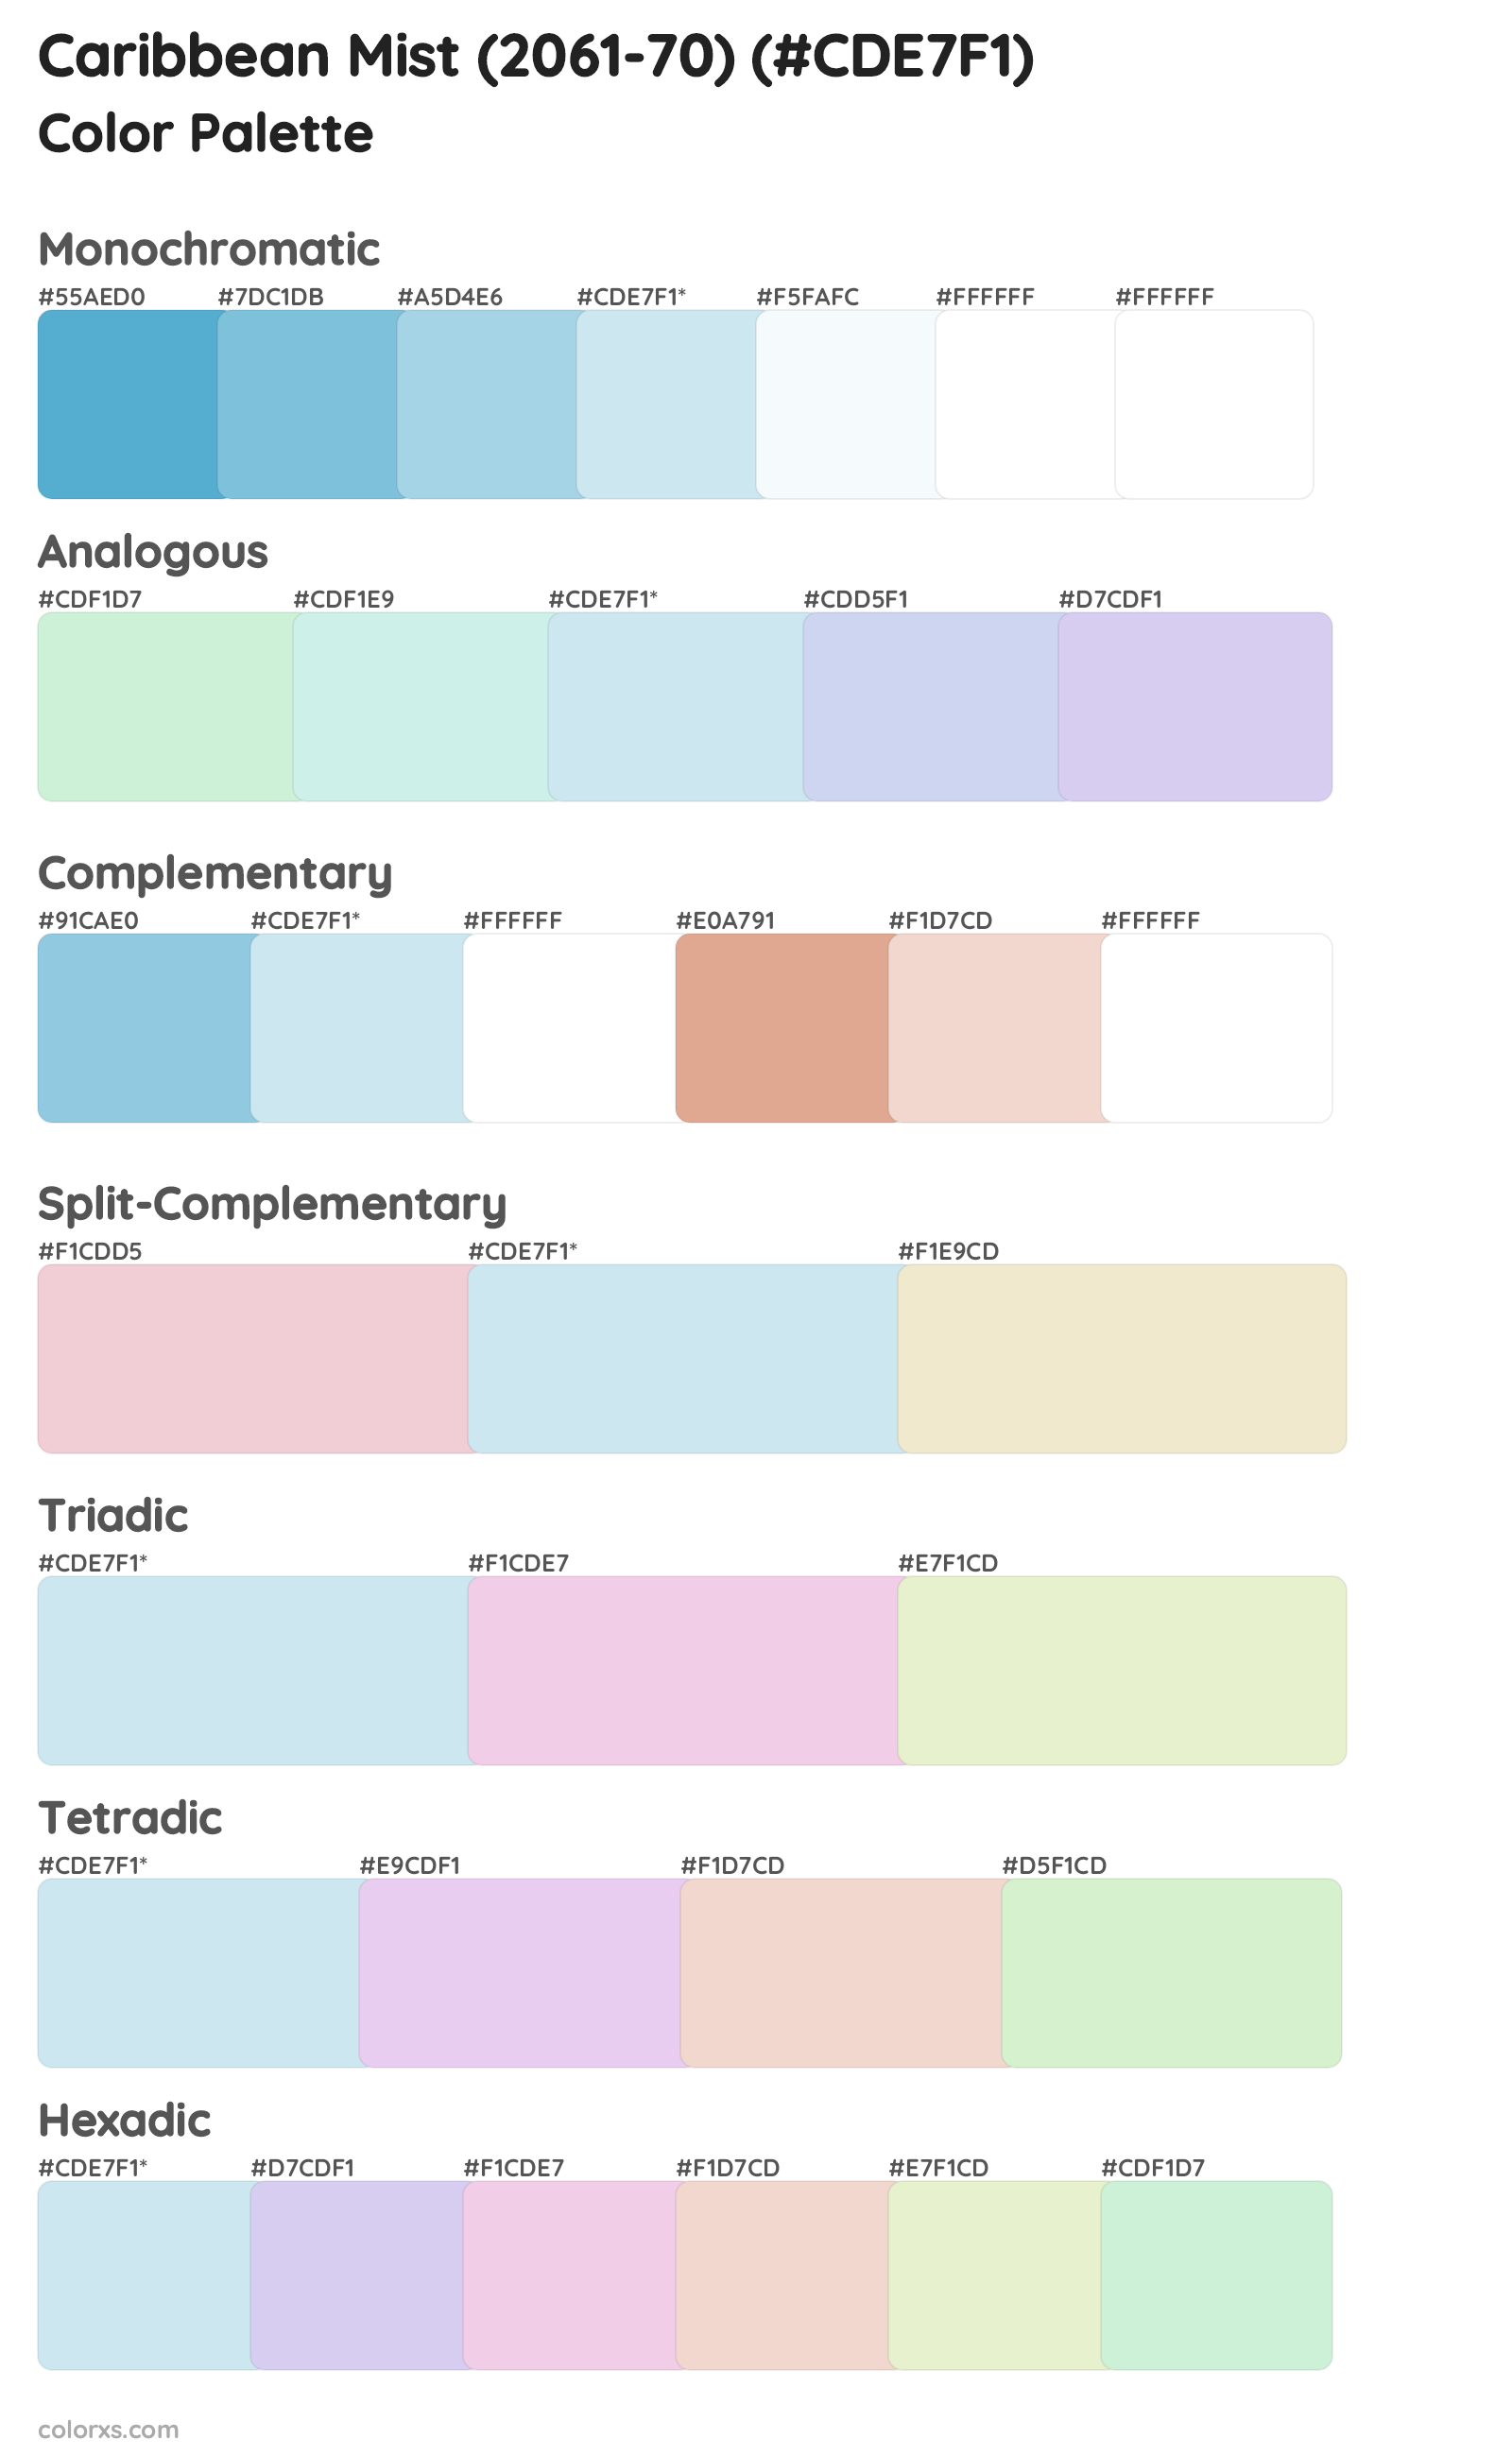 Caribbean Mist (2061-70) Color Scheme Palettes